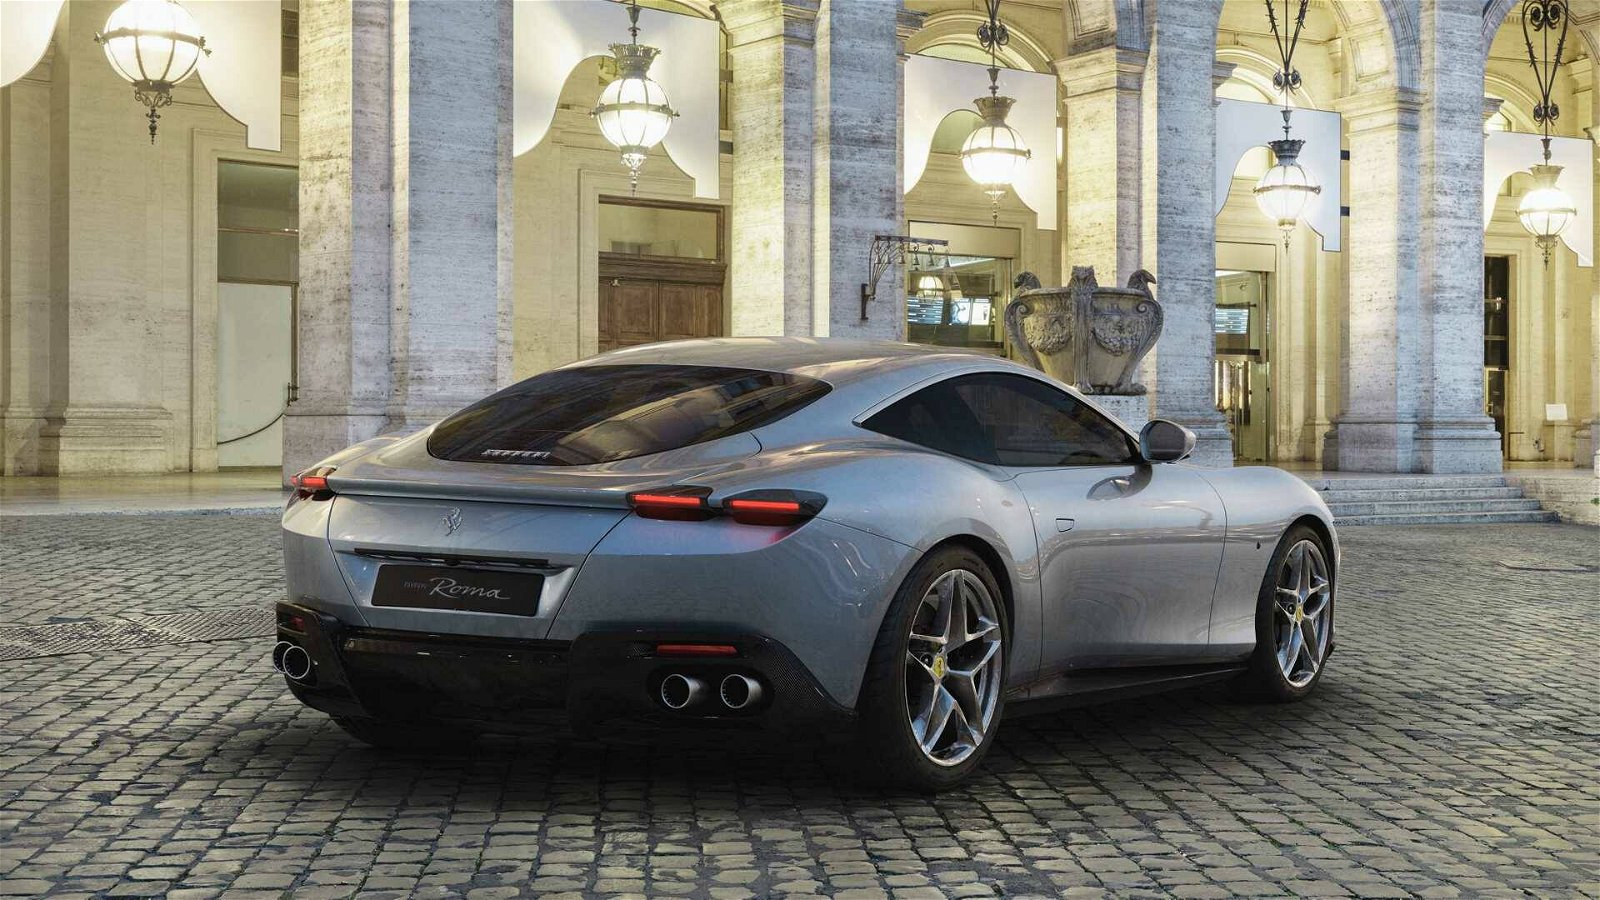 Immagine di Ferrari passa all’elettrico: il primo modello entro il 2030